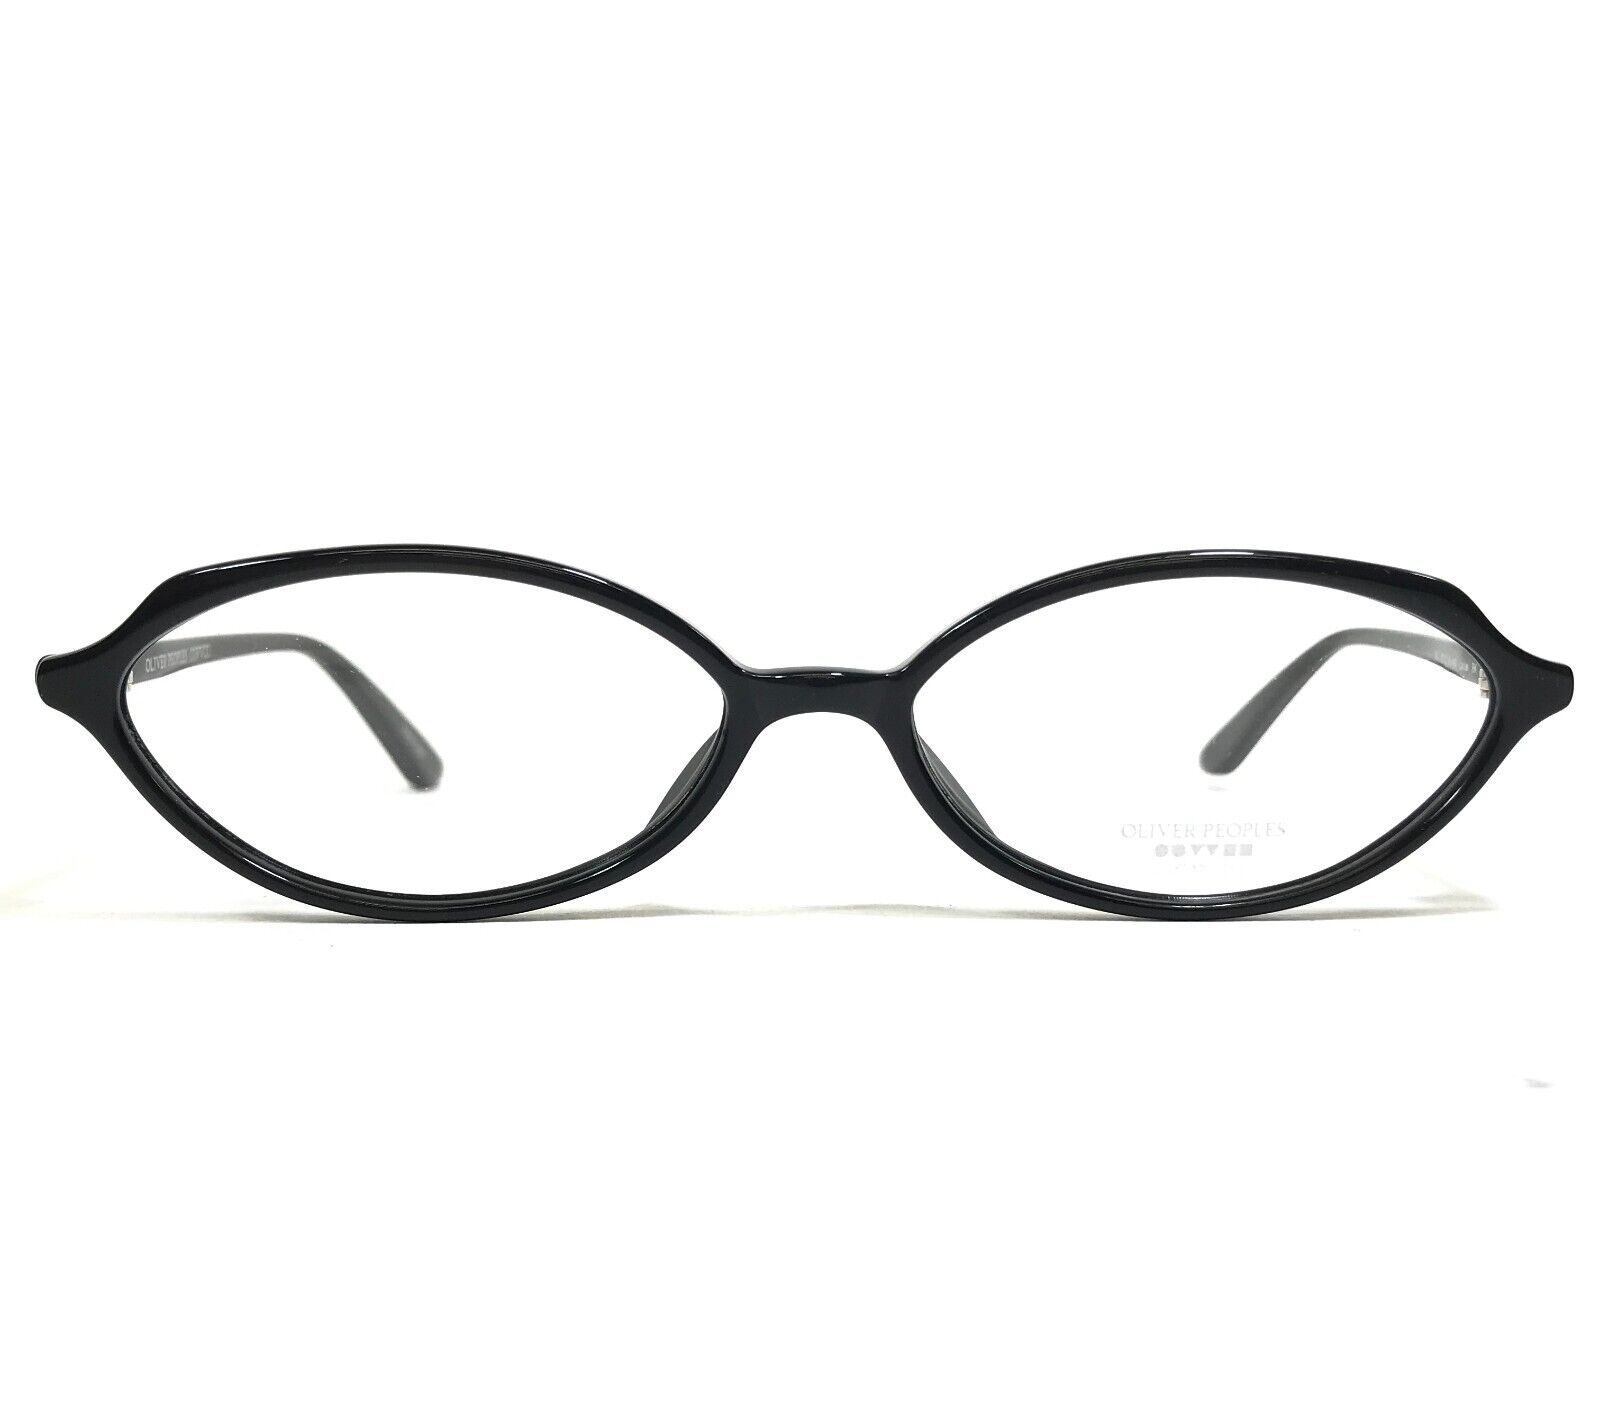 Primary image for Oliver Peoples Eyeglasses Frames Larue BK Polished Black Thin Rim 52-16-140